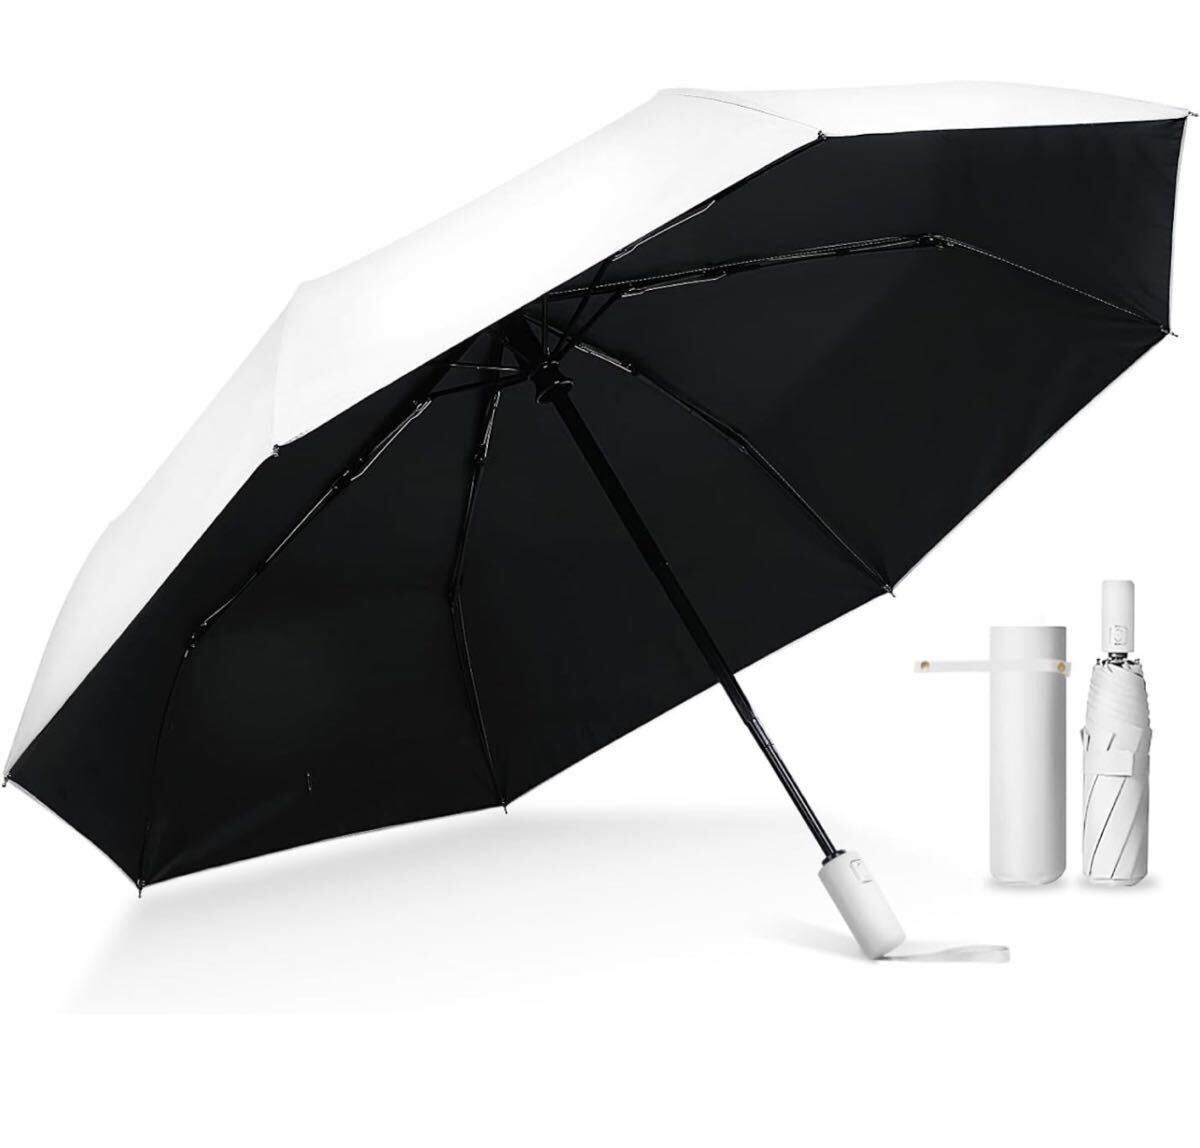 AB-1☆国内機関UVカット率100%認証 日傘 折りたたみ傘 完全遮光 晴雨兼用 男女兼用 ワンタッチ自動開閉 ザクラシックトーキョー  の画像1